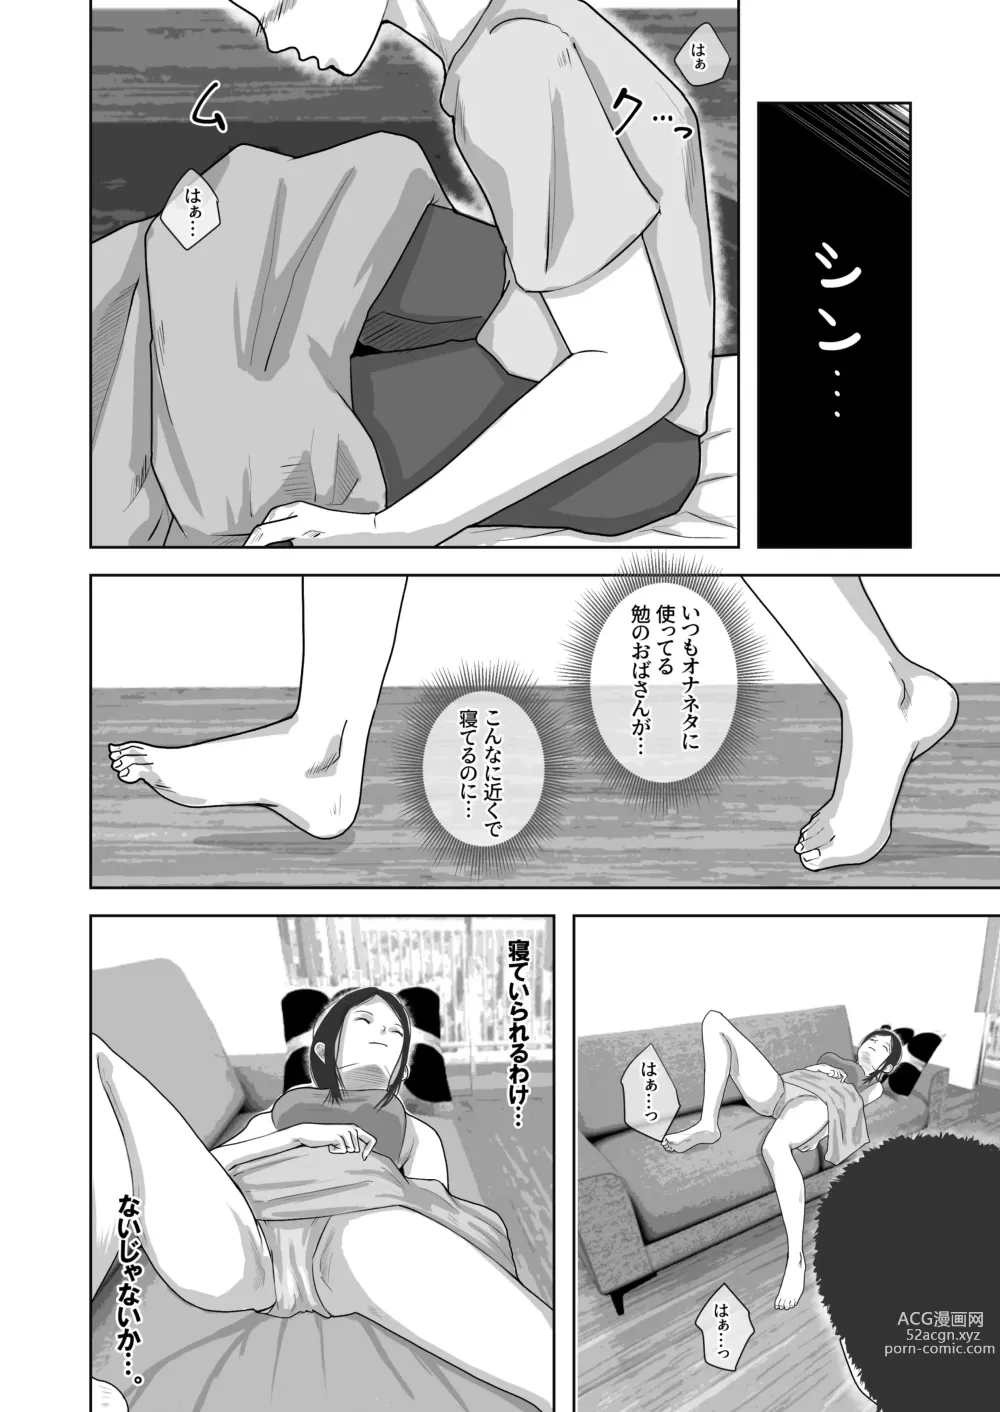 Page 9 of doujinshi Tomodachi no Okaa-san o Okazu ni Suru.